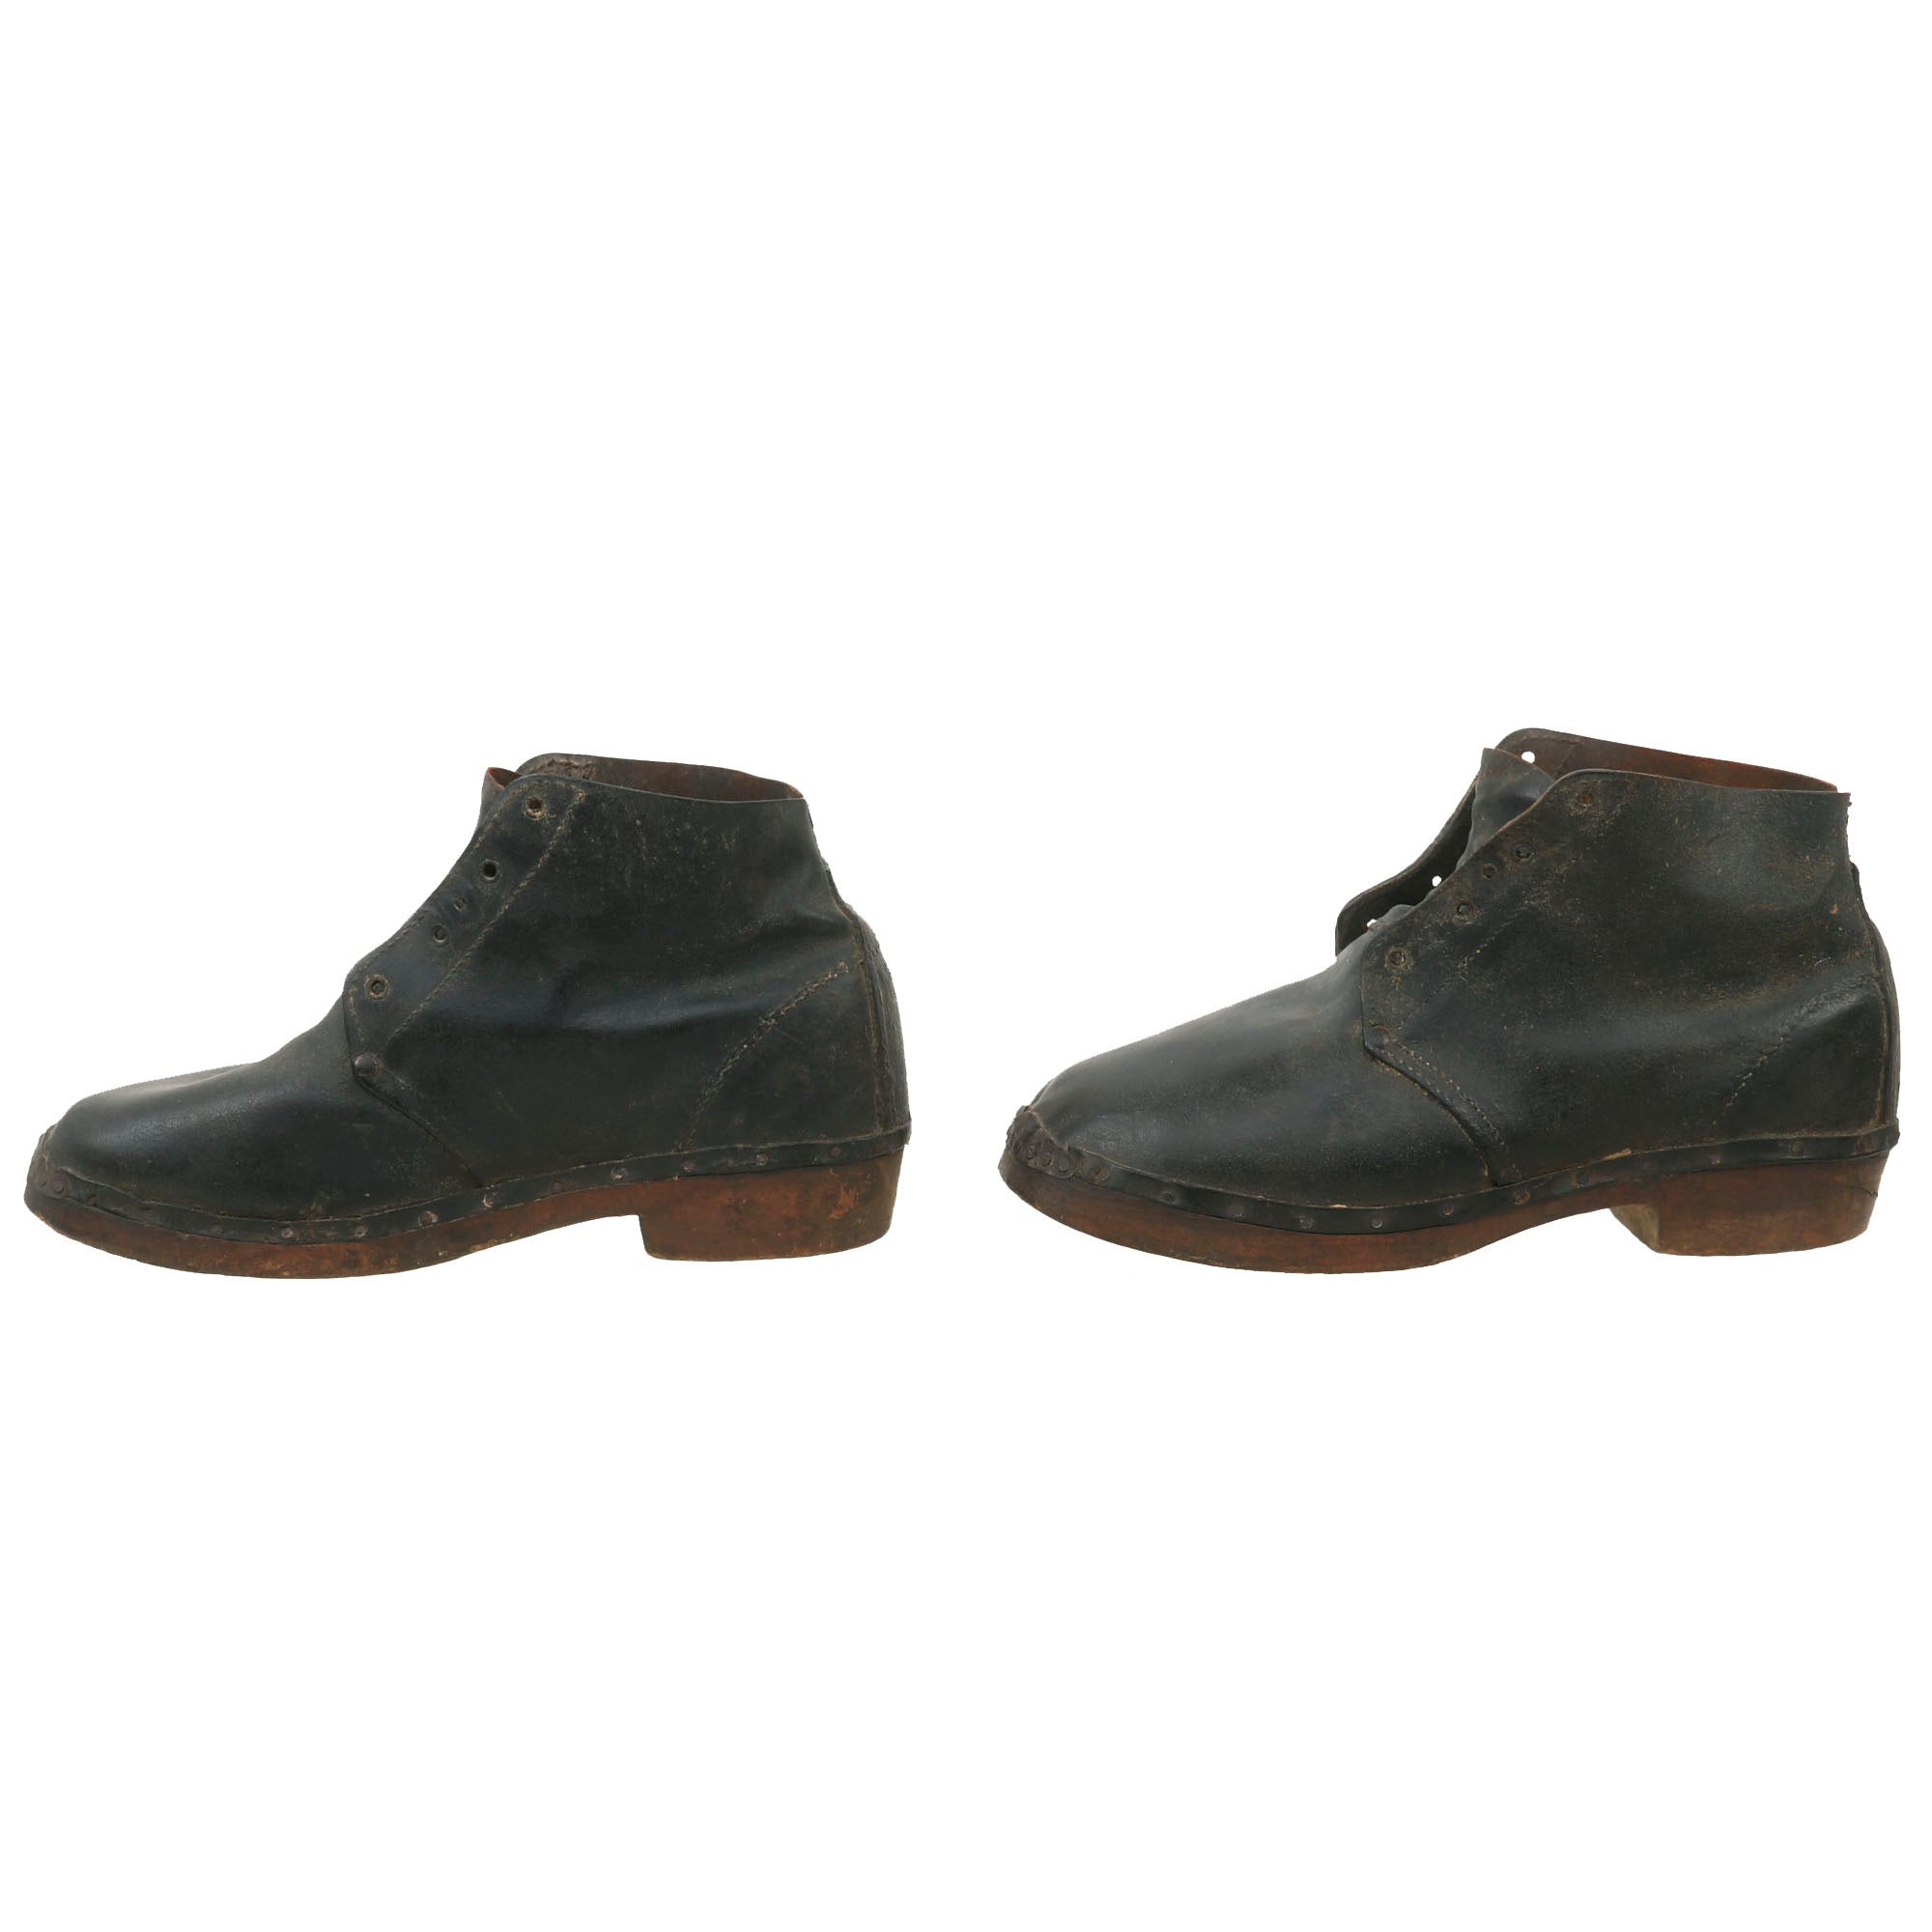 Original U.S. Civil War Era Confederate Wooden Sole “Brogan” Shoes - P ...